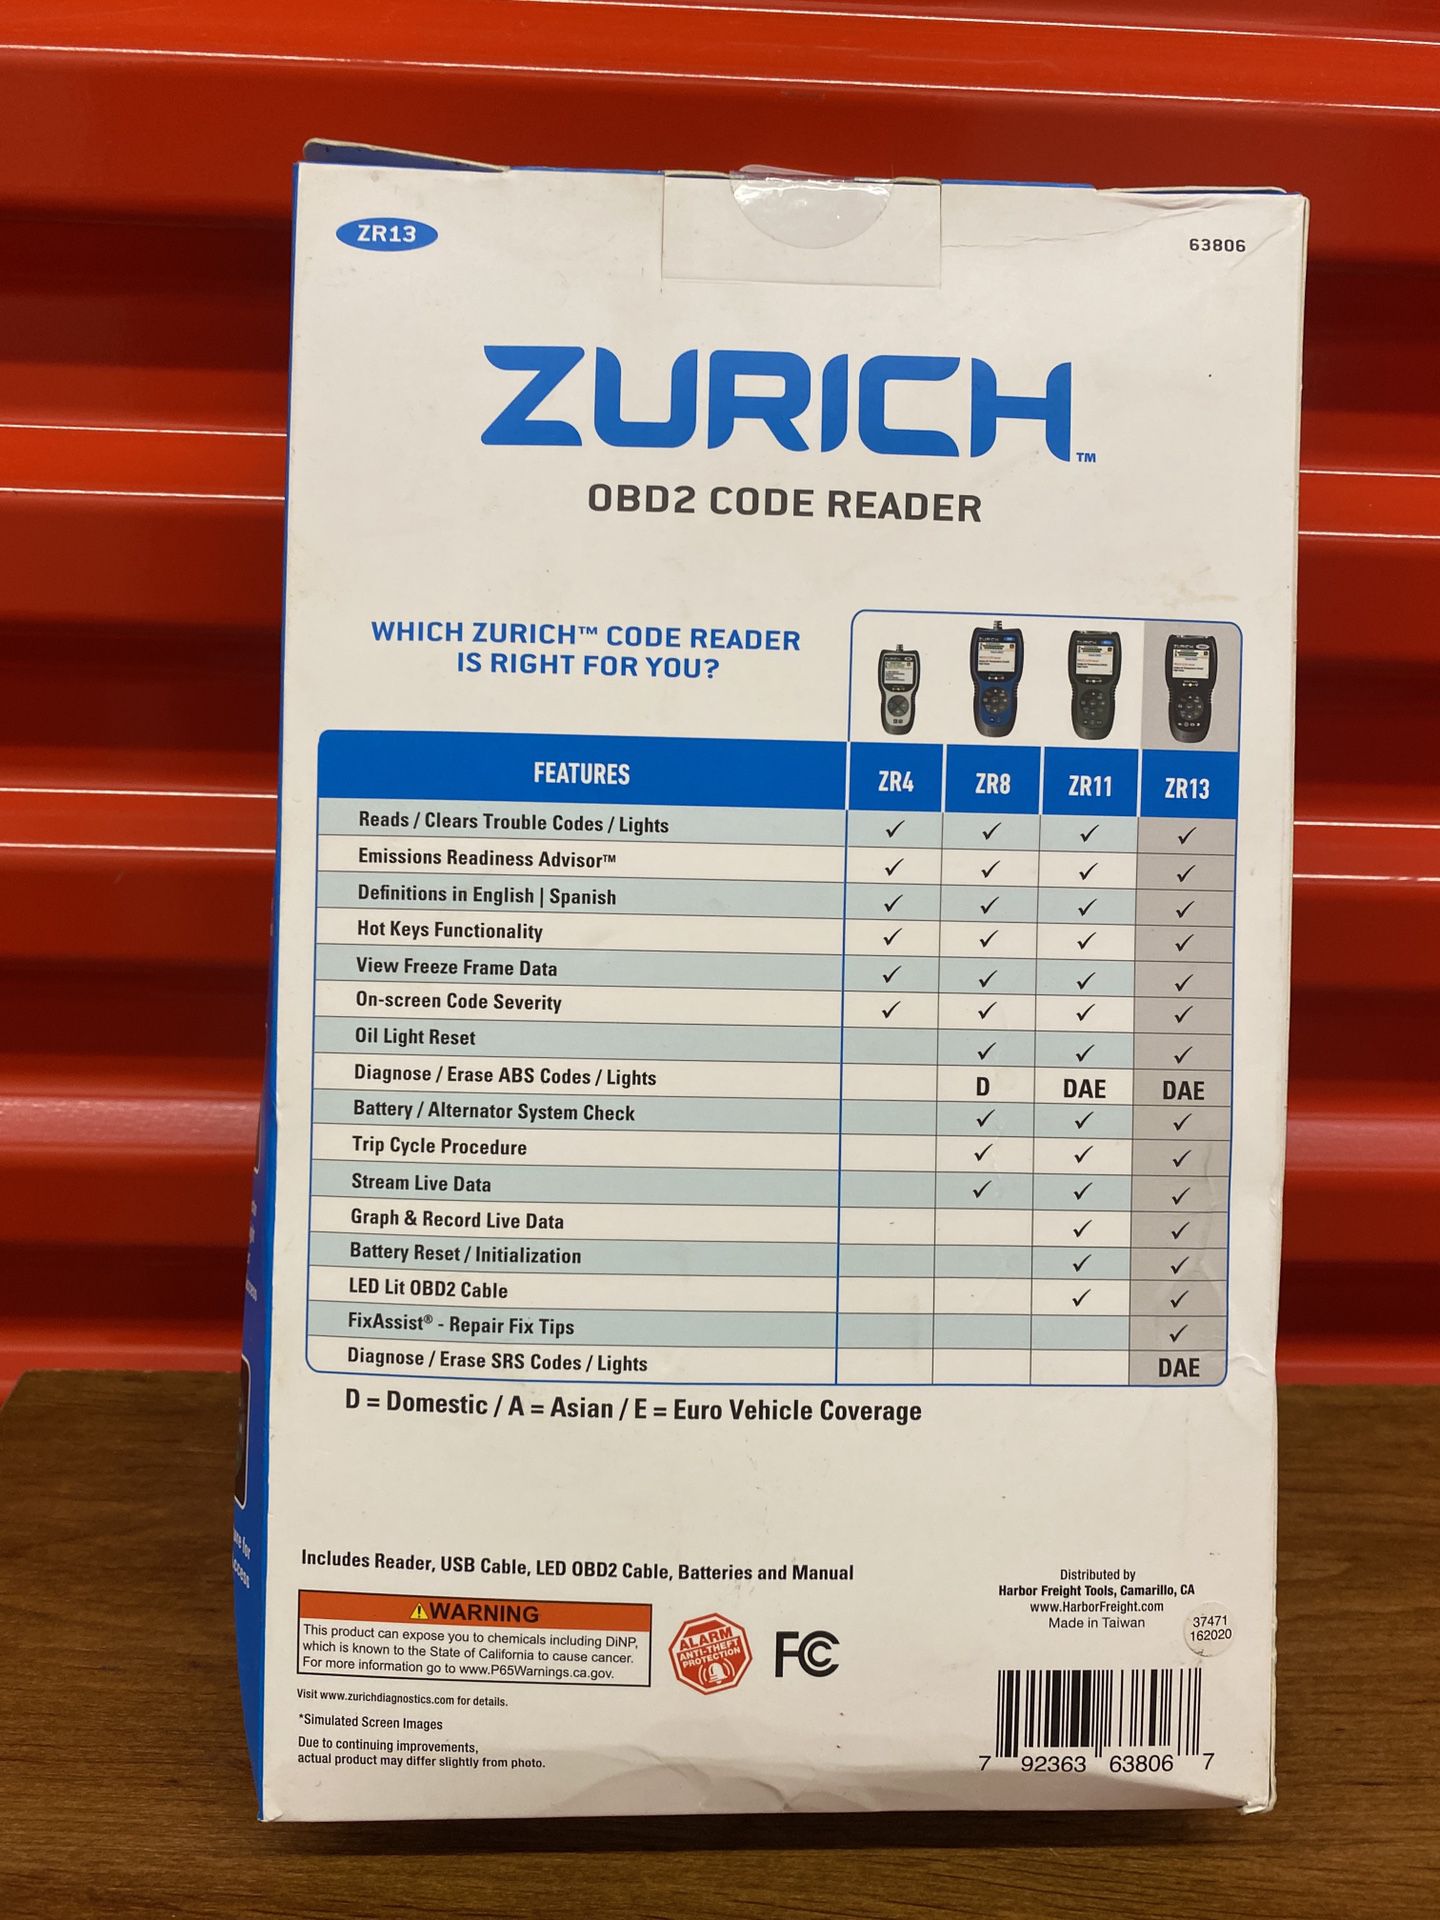 Zurich ZR13 OBD2 Code Reader  For $200